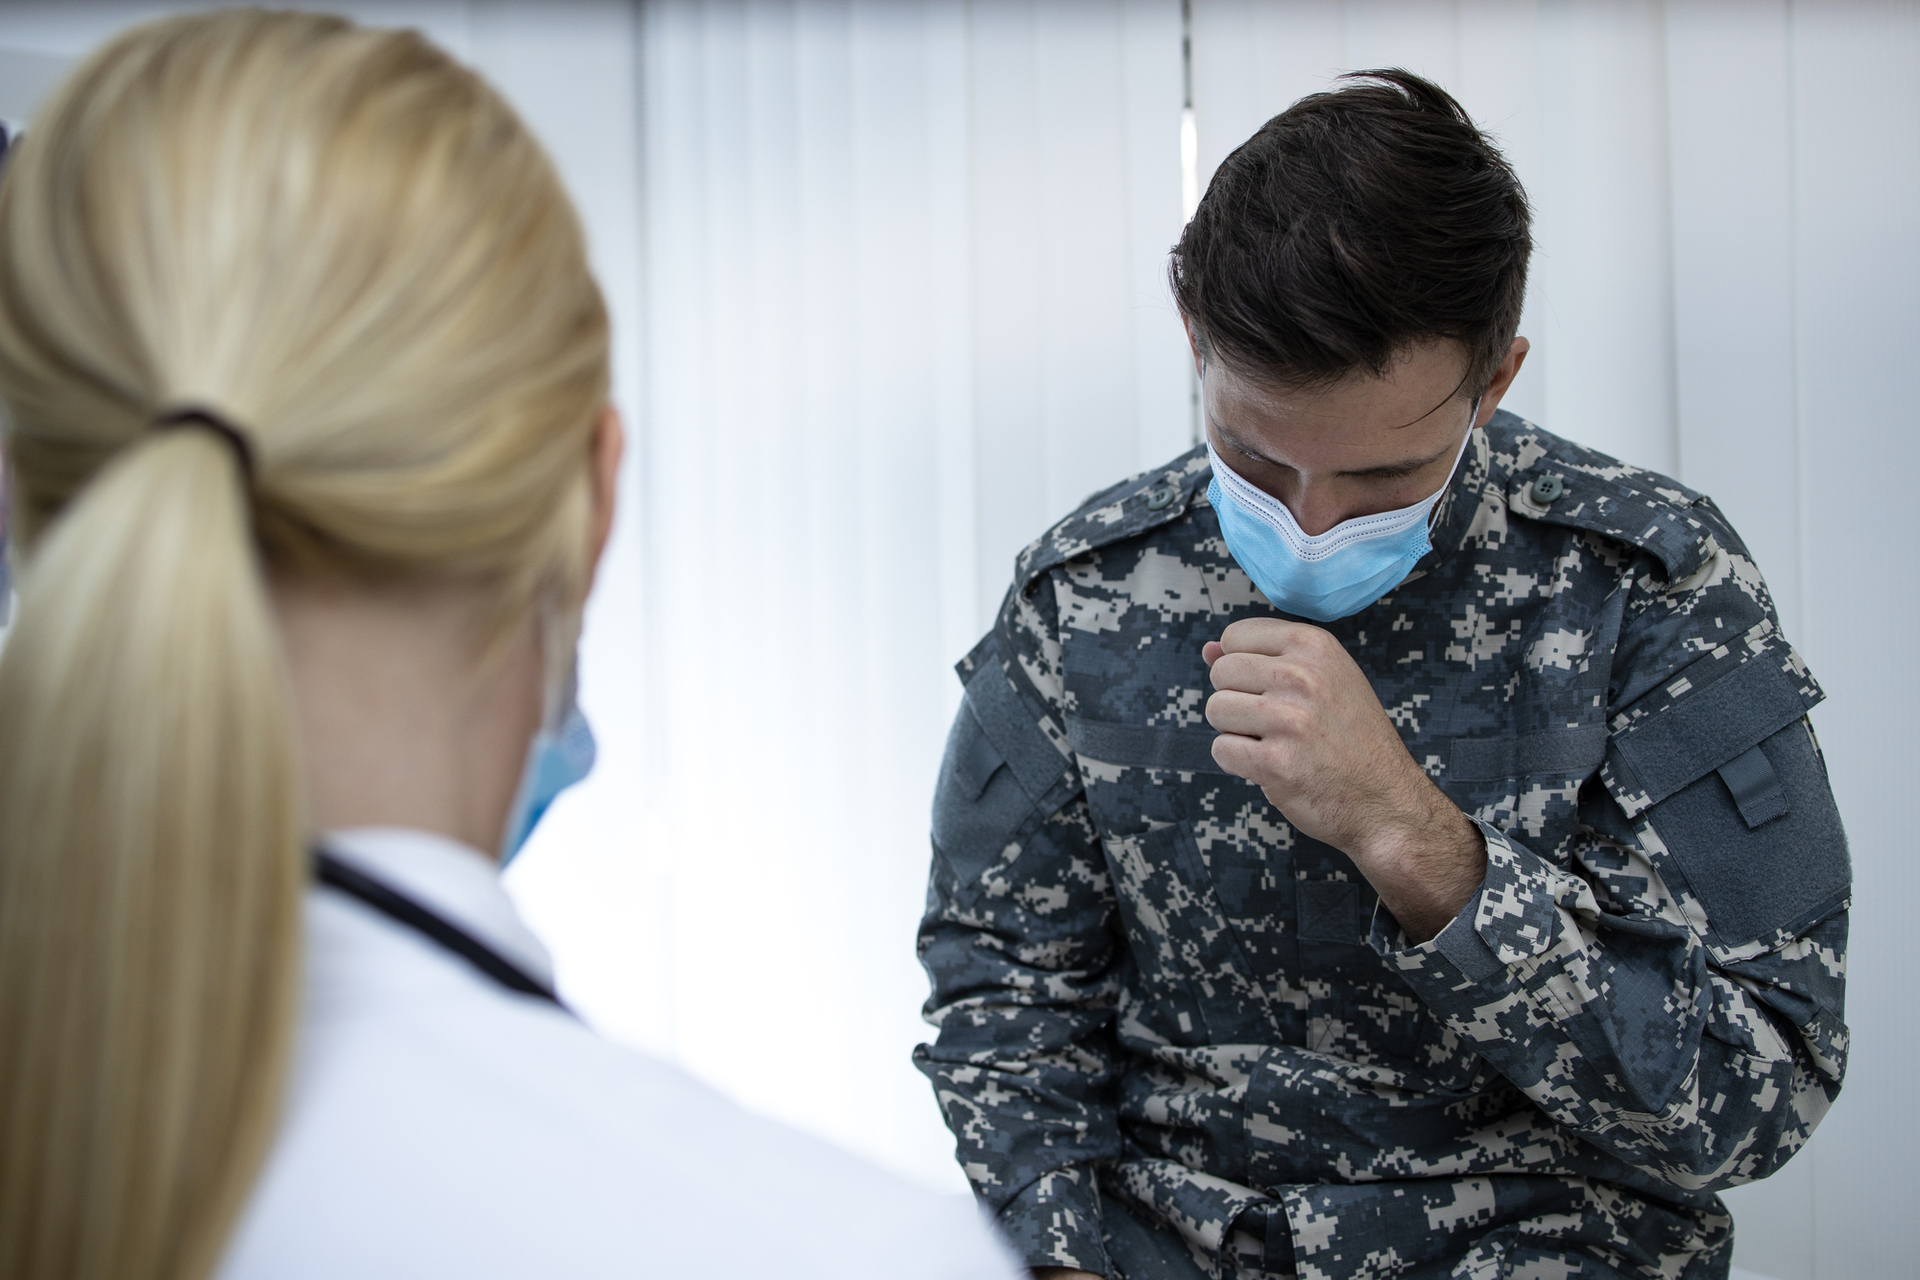 Військові наголошують, що медичний огляд є обов'язковим. Так, на службу забороняється брати людей із певними хворобами.